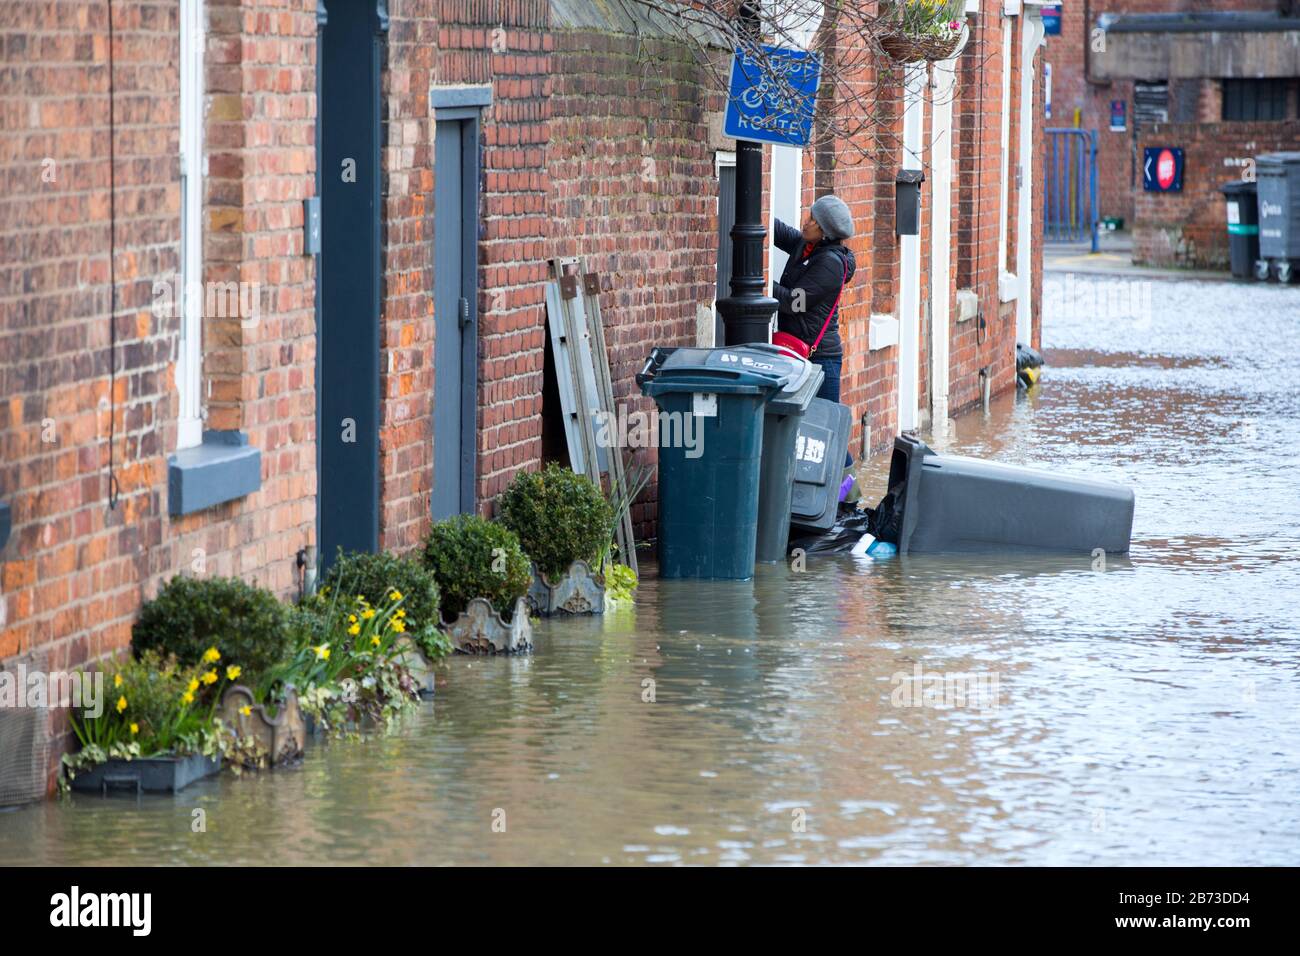 Die Häuser in Shrewsbury wurden vom Fluss Severn überschwemmt, nachdem der feuchteste Februar, der jemals in Großbritannien verzeichnet wurde, Februar 2020 war. Stockfoto